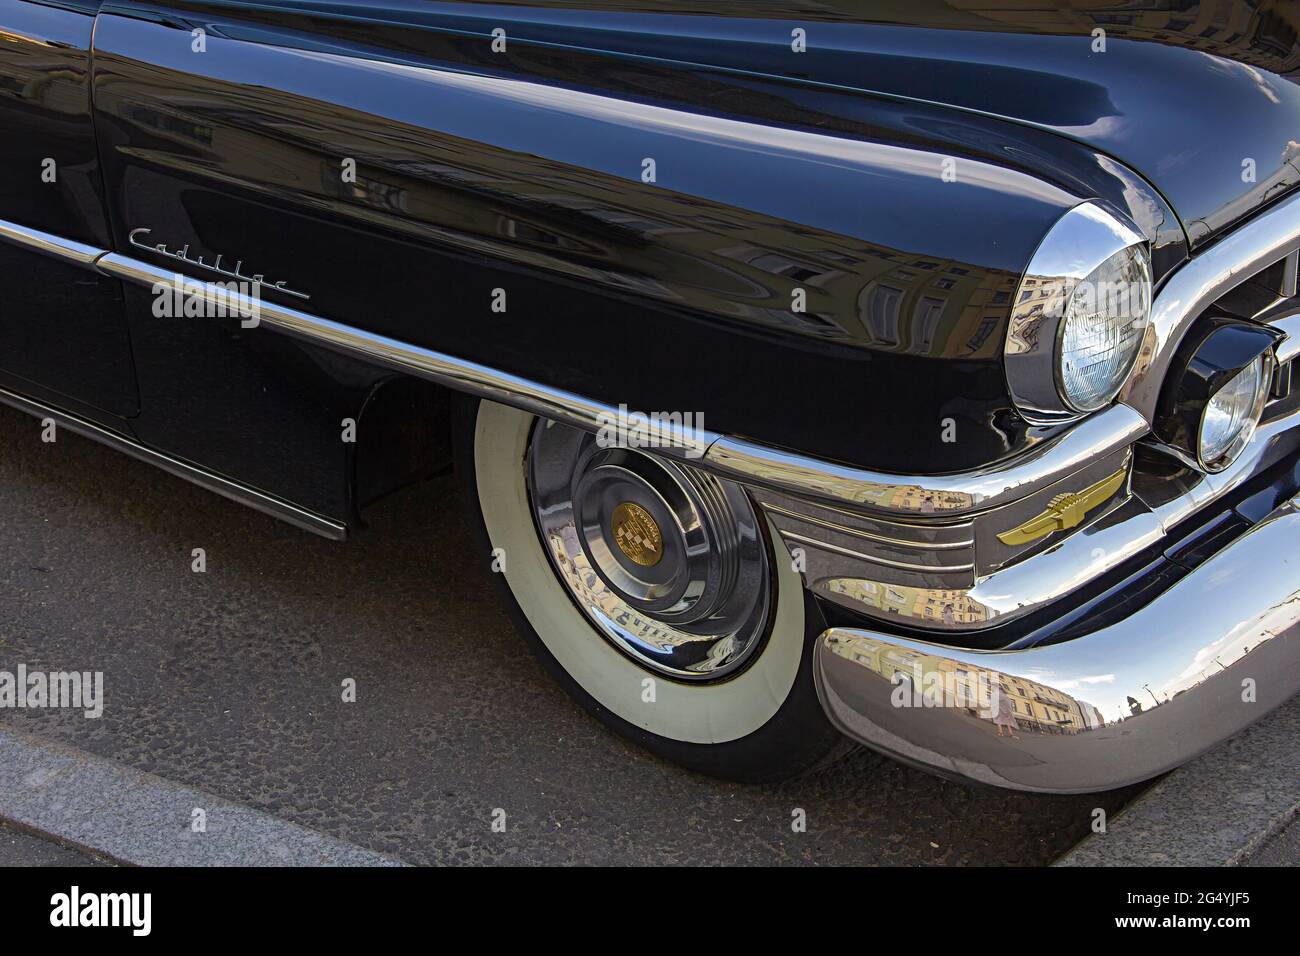 ST. PETERSBURG, RUSSIE - 9 JUIN 2021 : Cadillac coupé Deville années 1950, voiture de direction noire, vieille voiture rétro classique, époque de la grande gatsby, reflet de la ville Banque D'Images